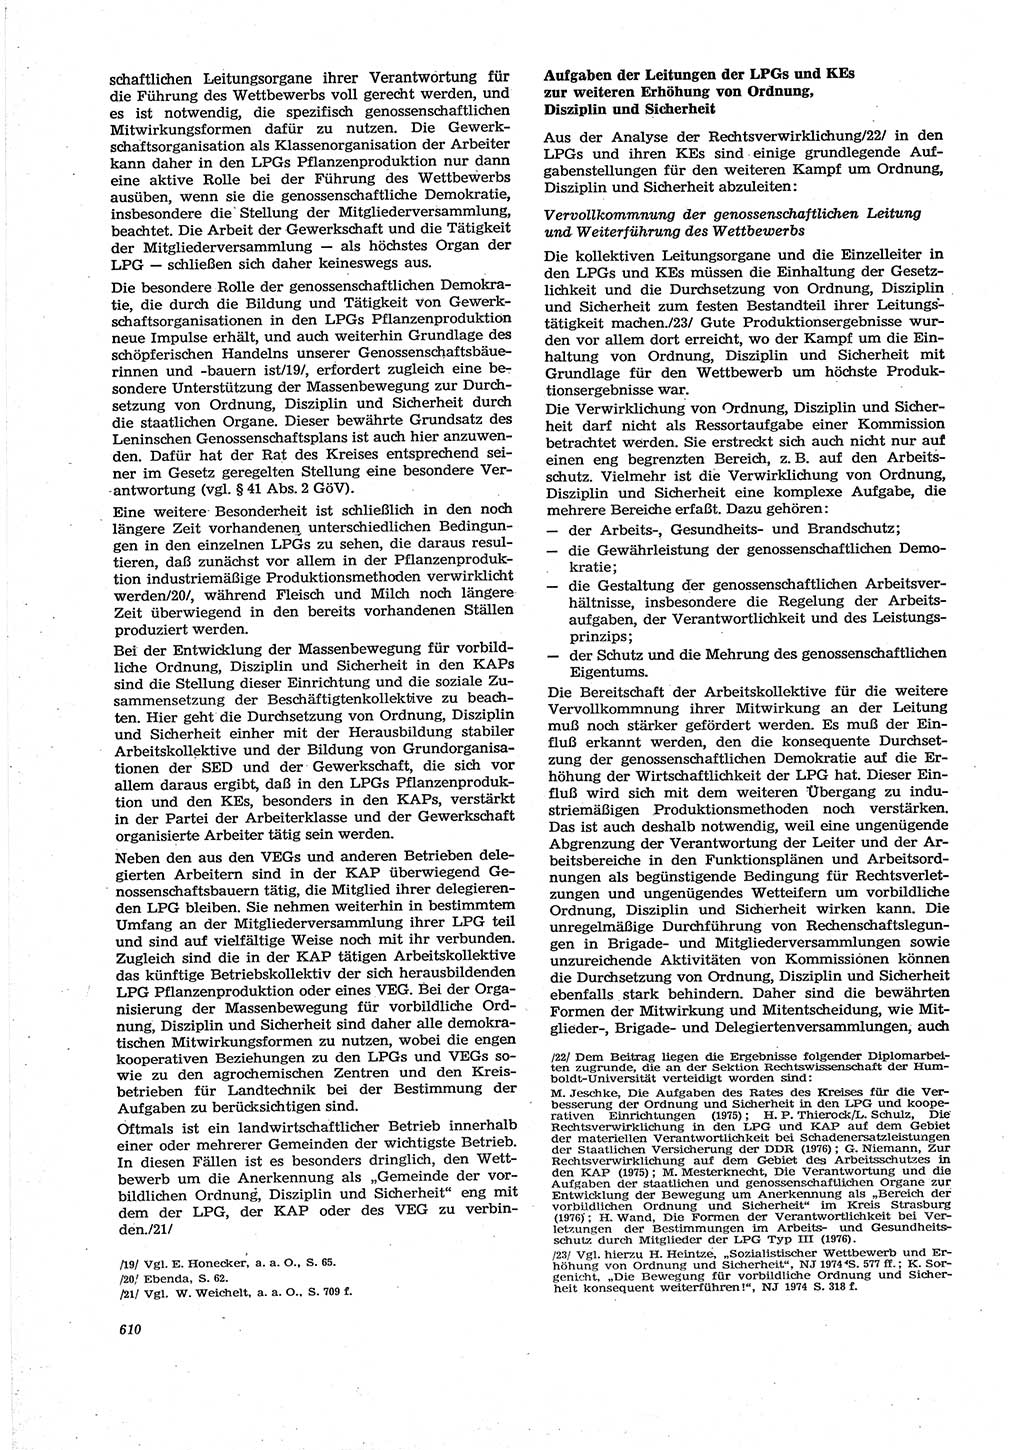 Neue Justiz (NJ), Zeitschrift für Recht und Rechtswissenschaft [Deutsche Demokratische Republik (DDR)], 30. Jahrgang 1976, Seite 610 (NJ DDR 1976, S. 610)